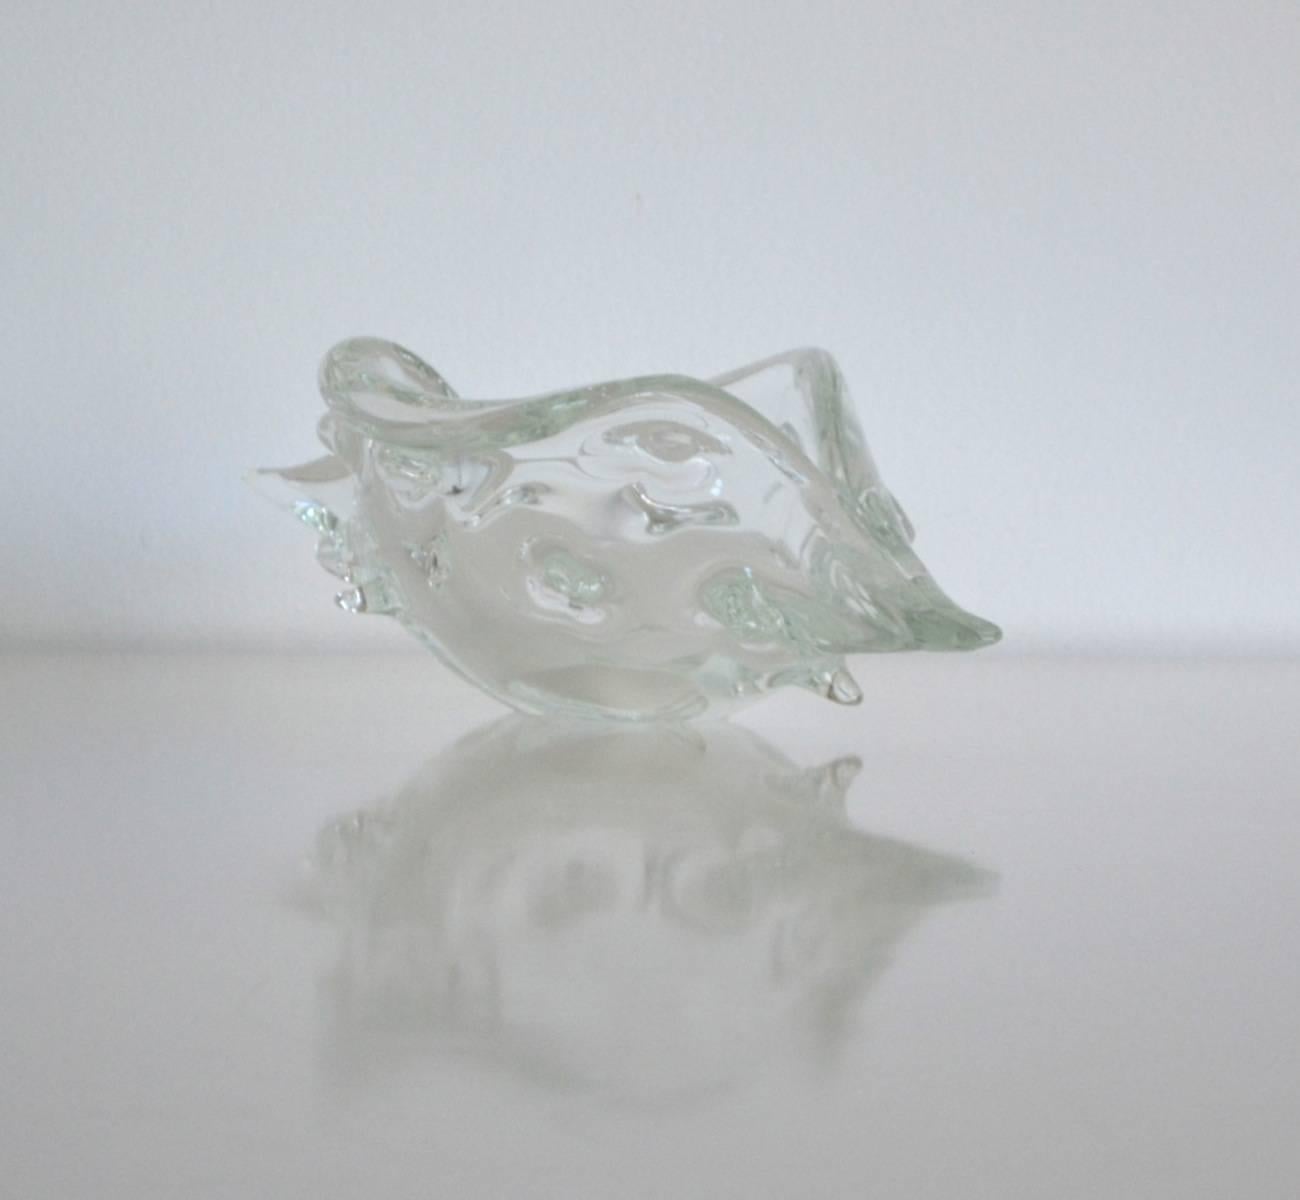 Italian Midcentury Blown Glass Shell by Licio Zanetti For Sale 2